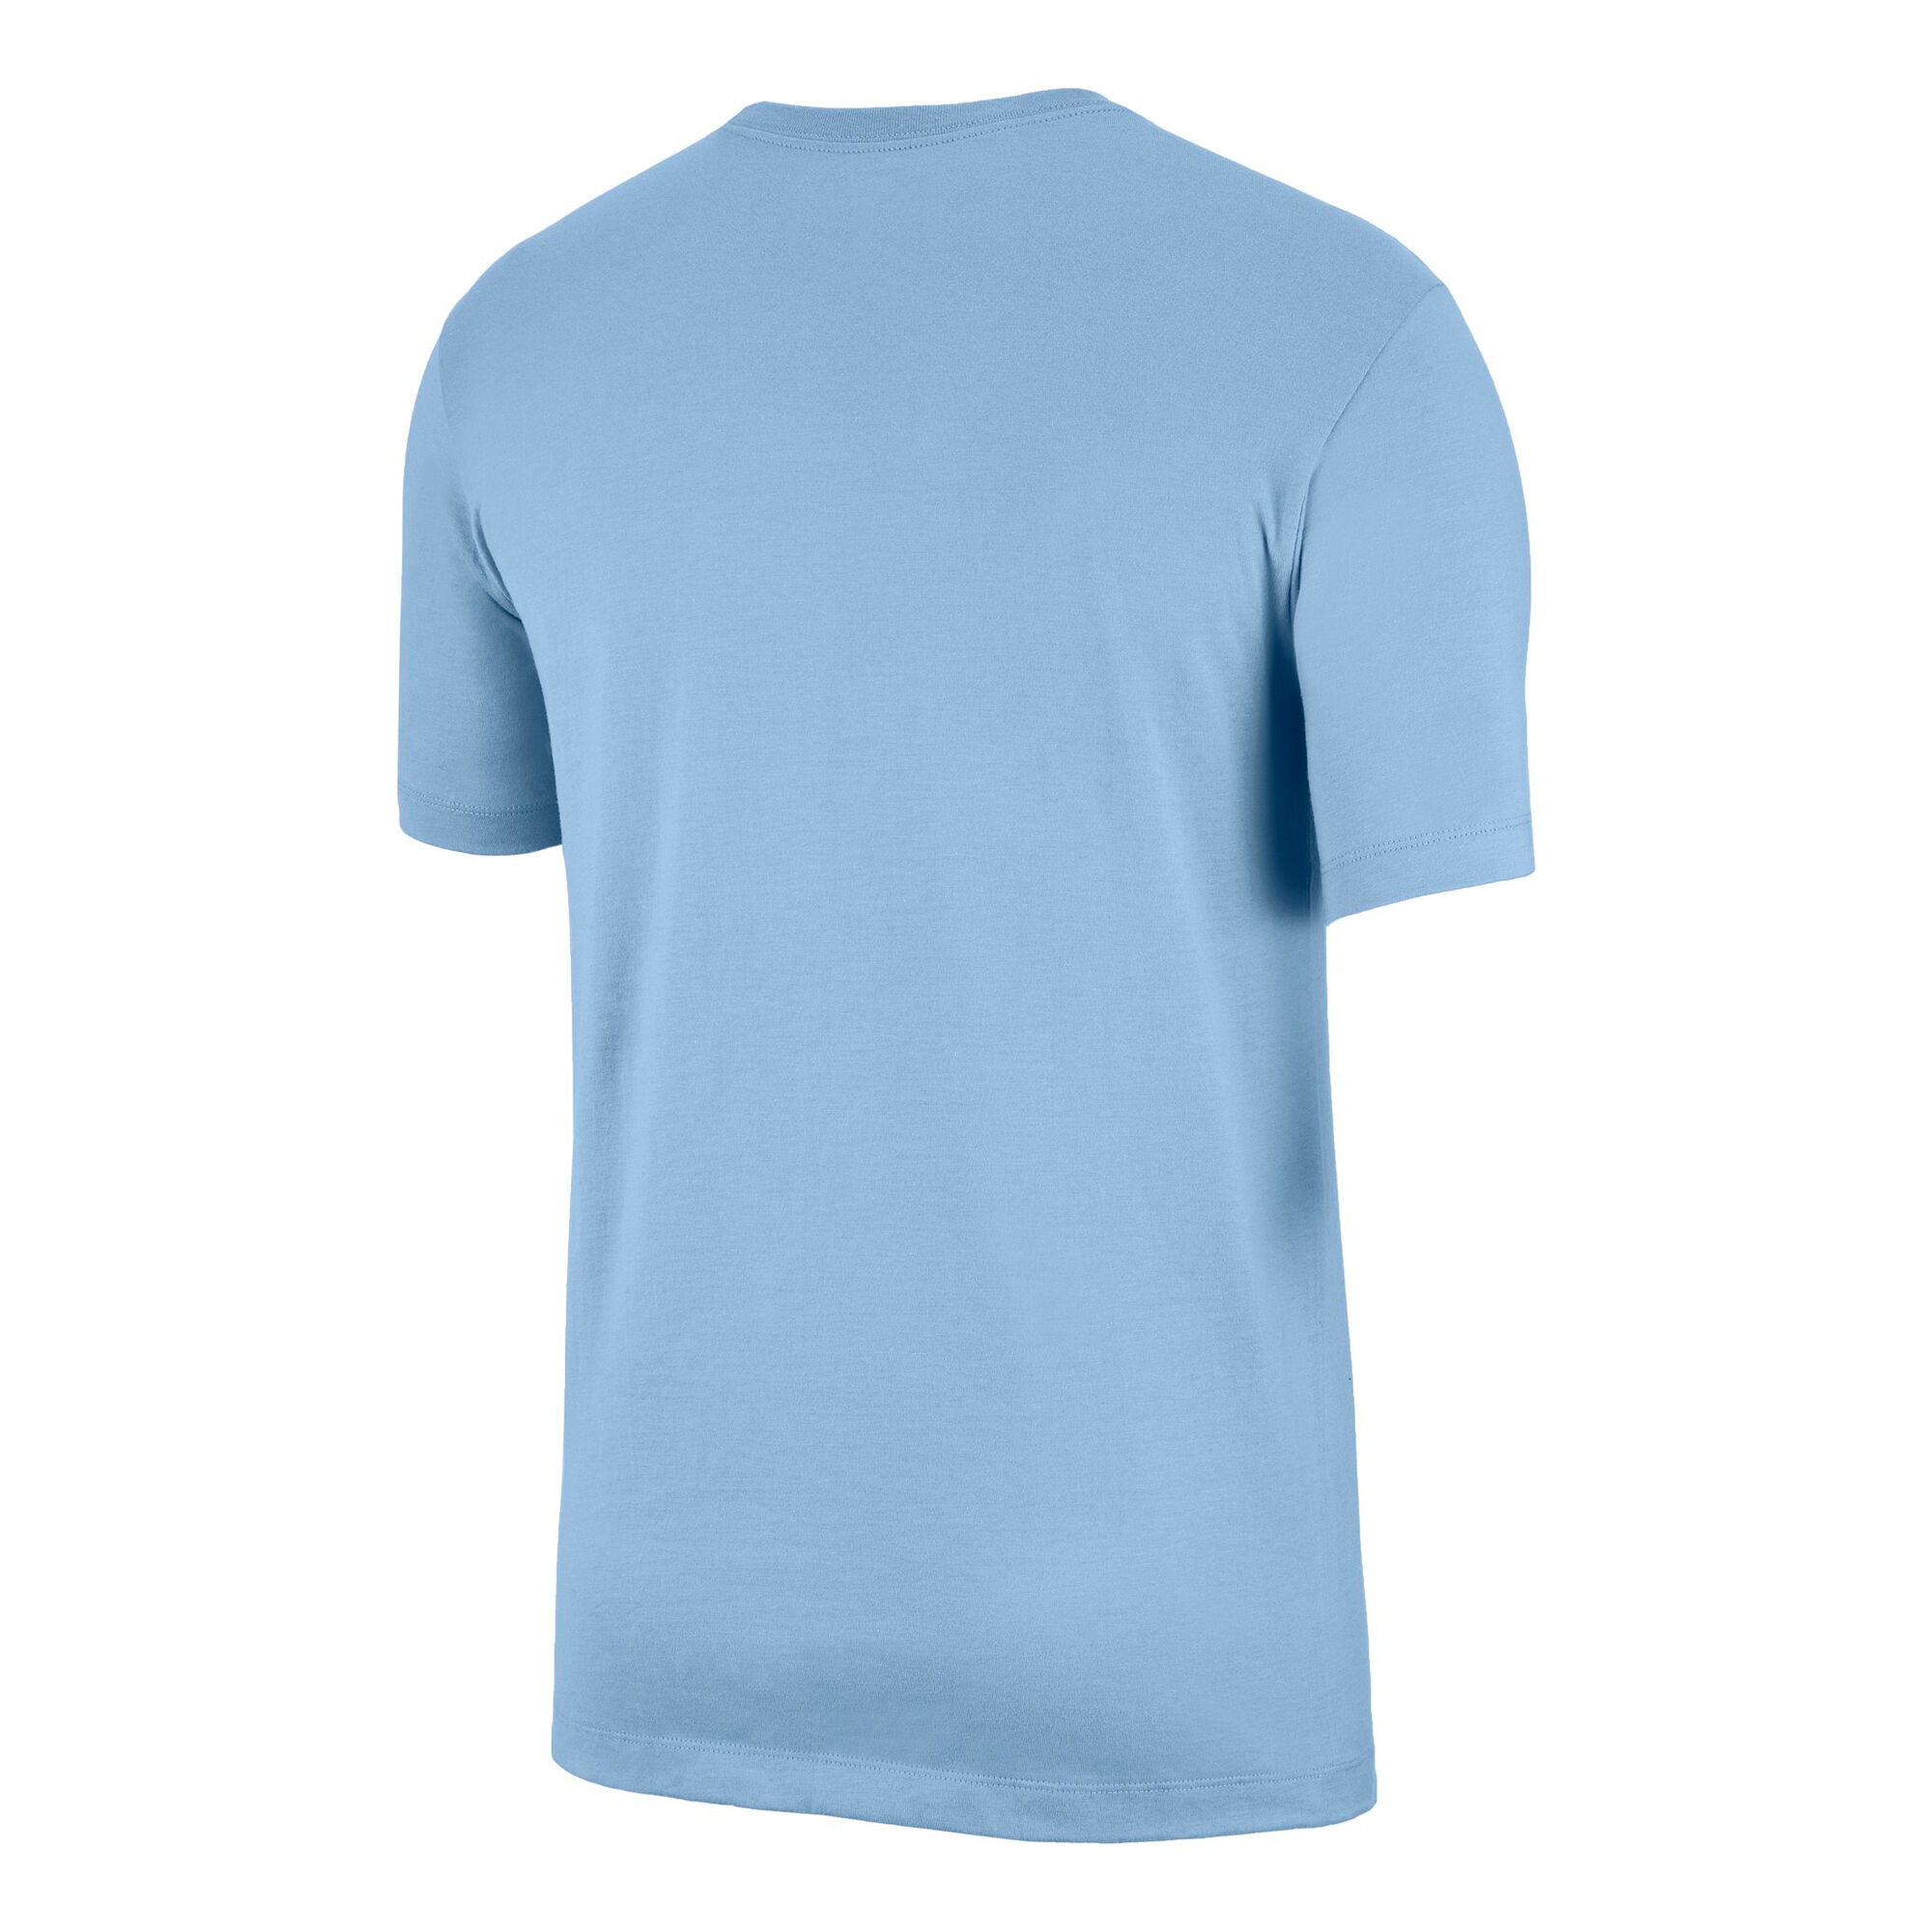 buy Nike Sportswear T-Shirt Men - Light Blue online | Tennis-Point